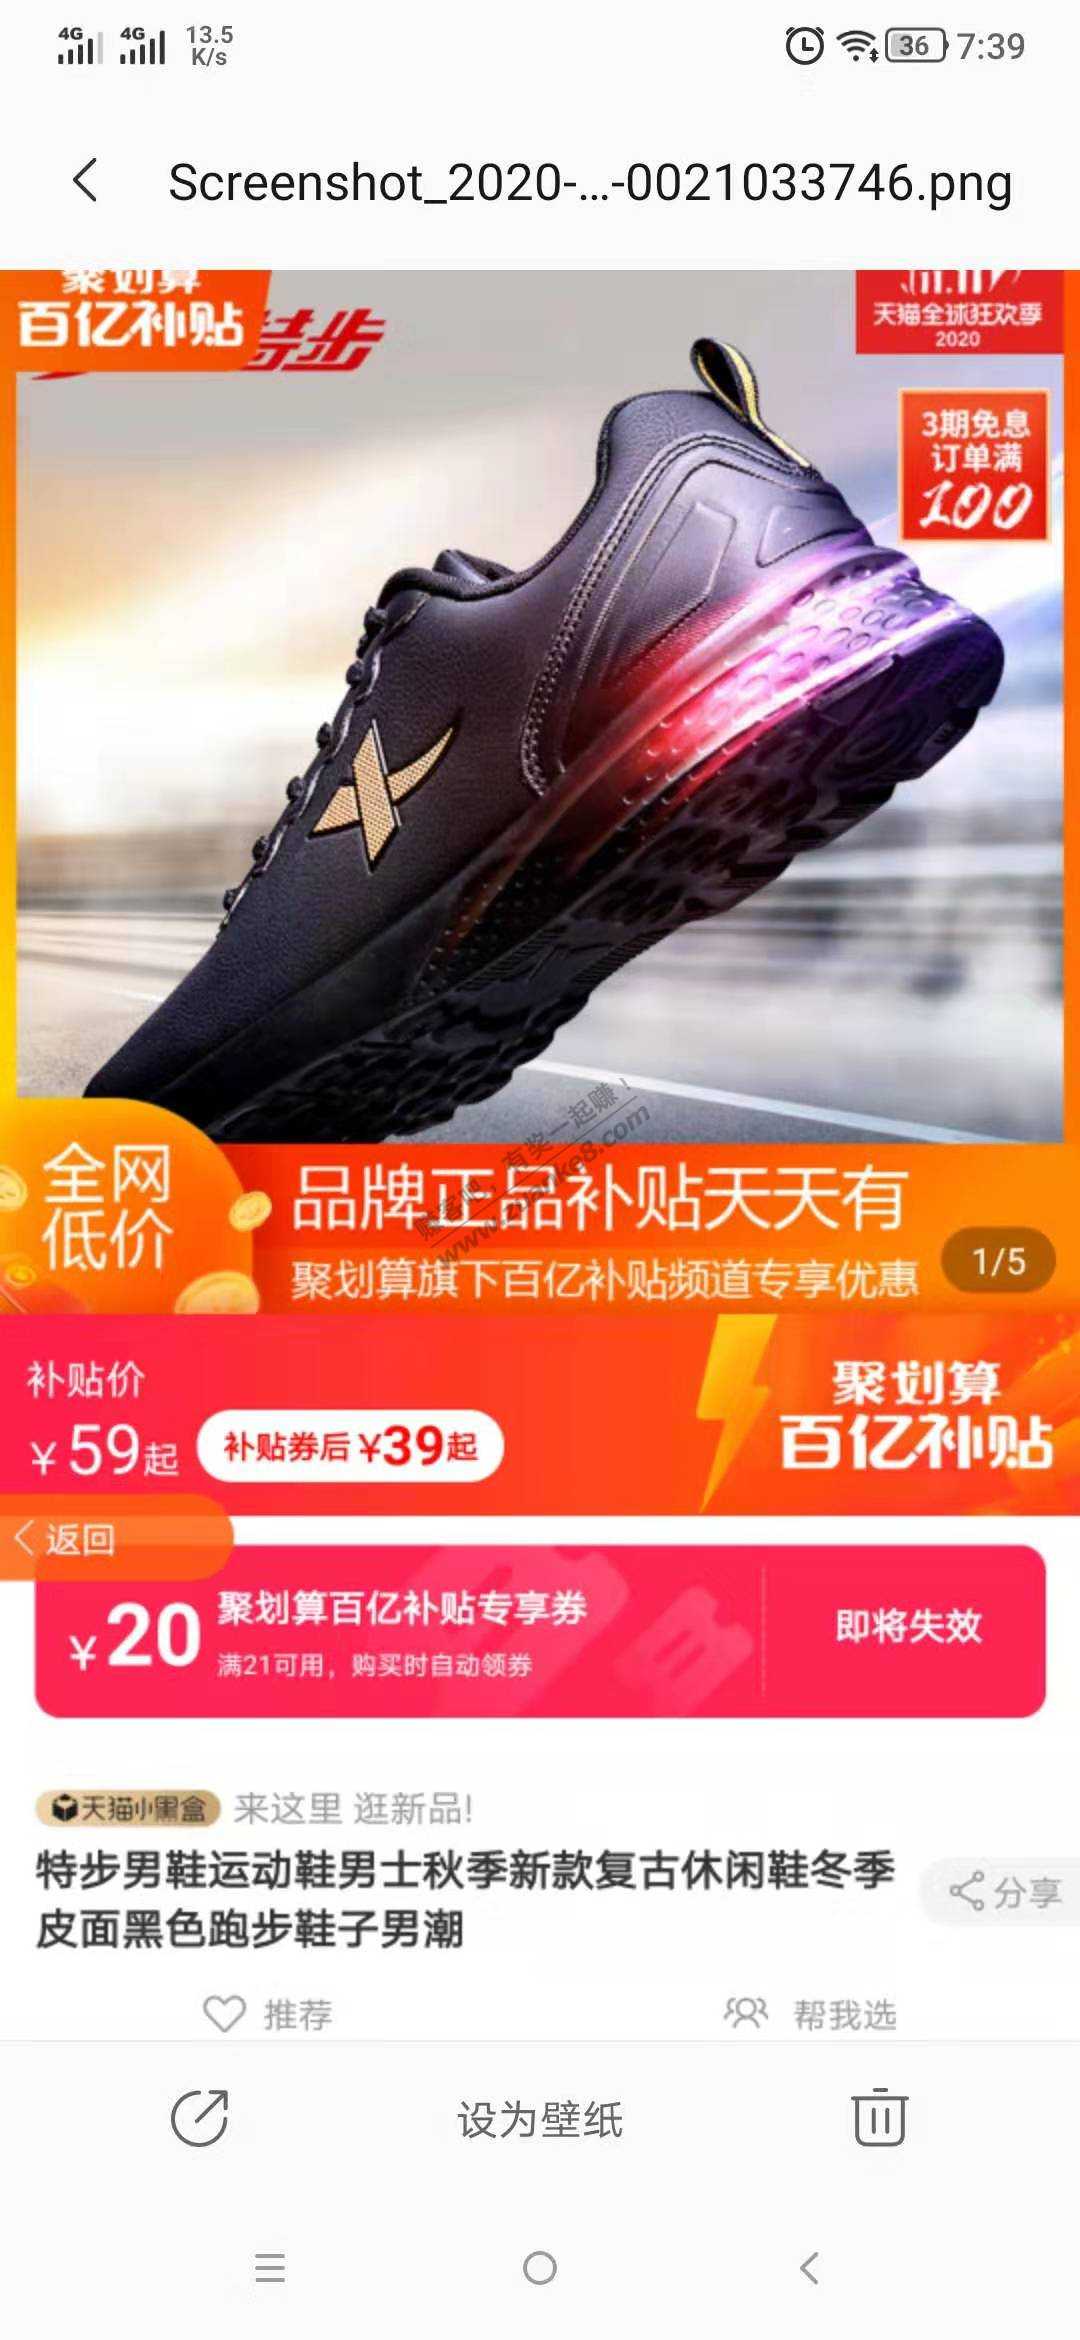 39运动鞋又来啦   ----特步-惠小助(52huixz.com)